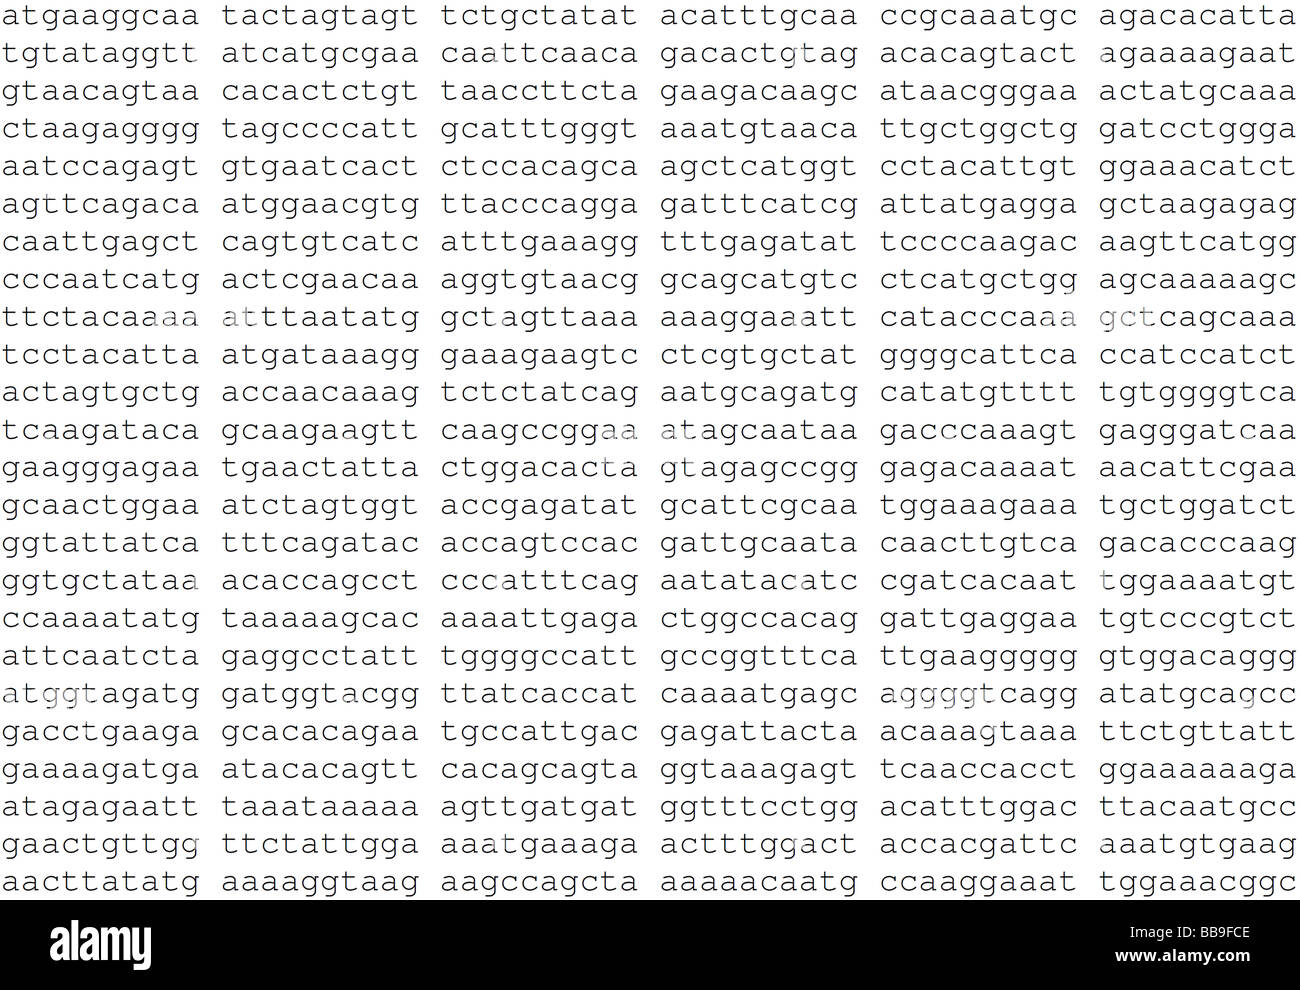 Parziale il codice genetico di peste aviaria H1N1 isolato dal focolaio iniziale in Messico Foto Stock